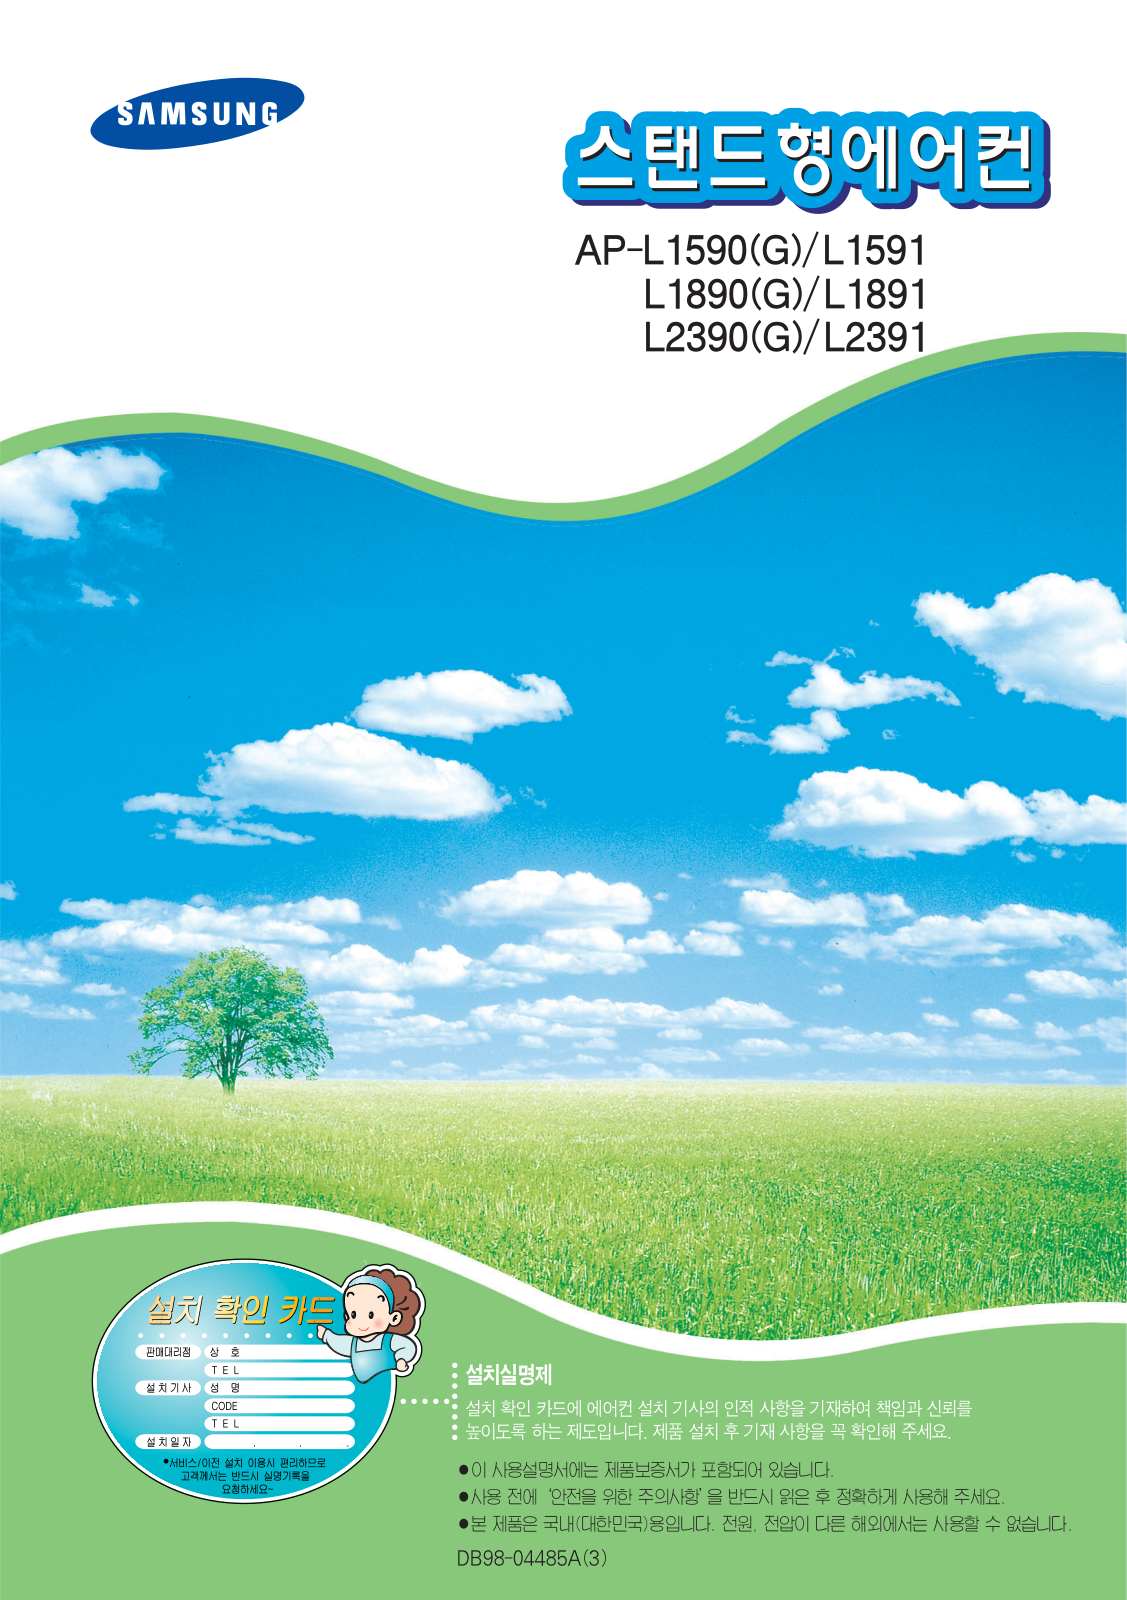 Samsung AP-L2390G, AP-L2391, AP-L2390, AP-L1891, AP-L1890G User Manual